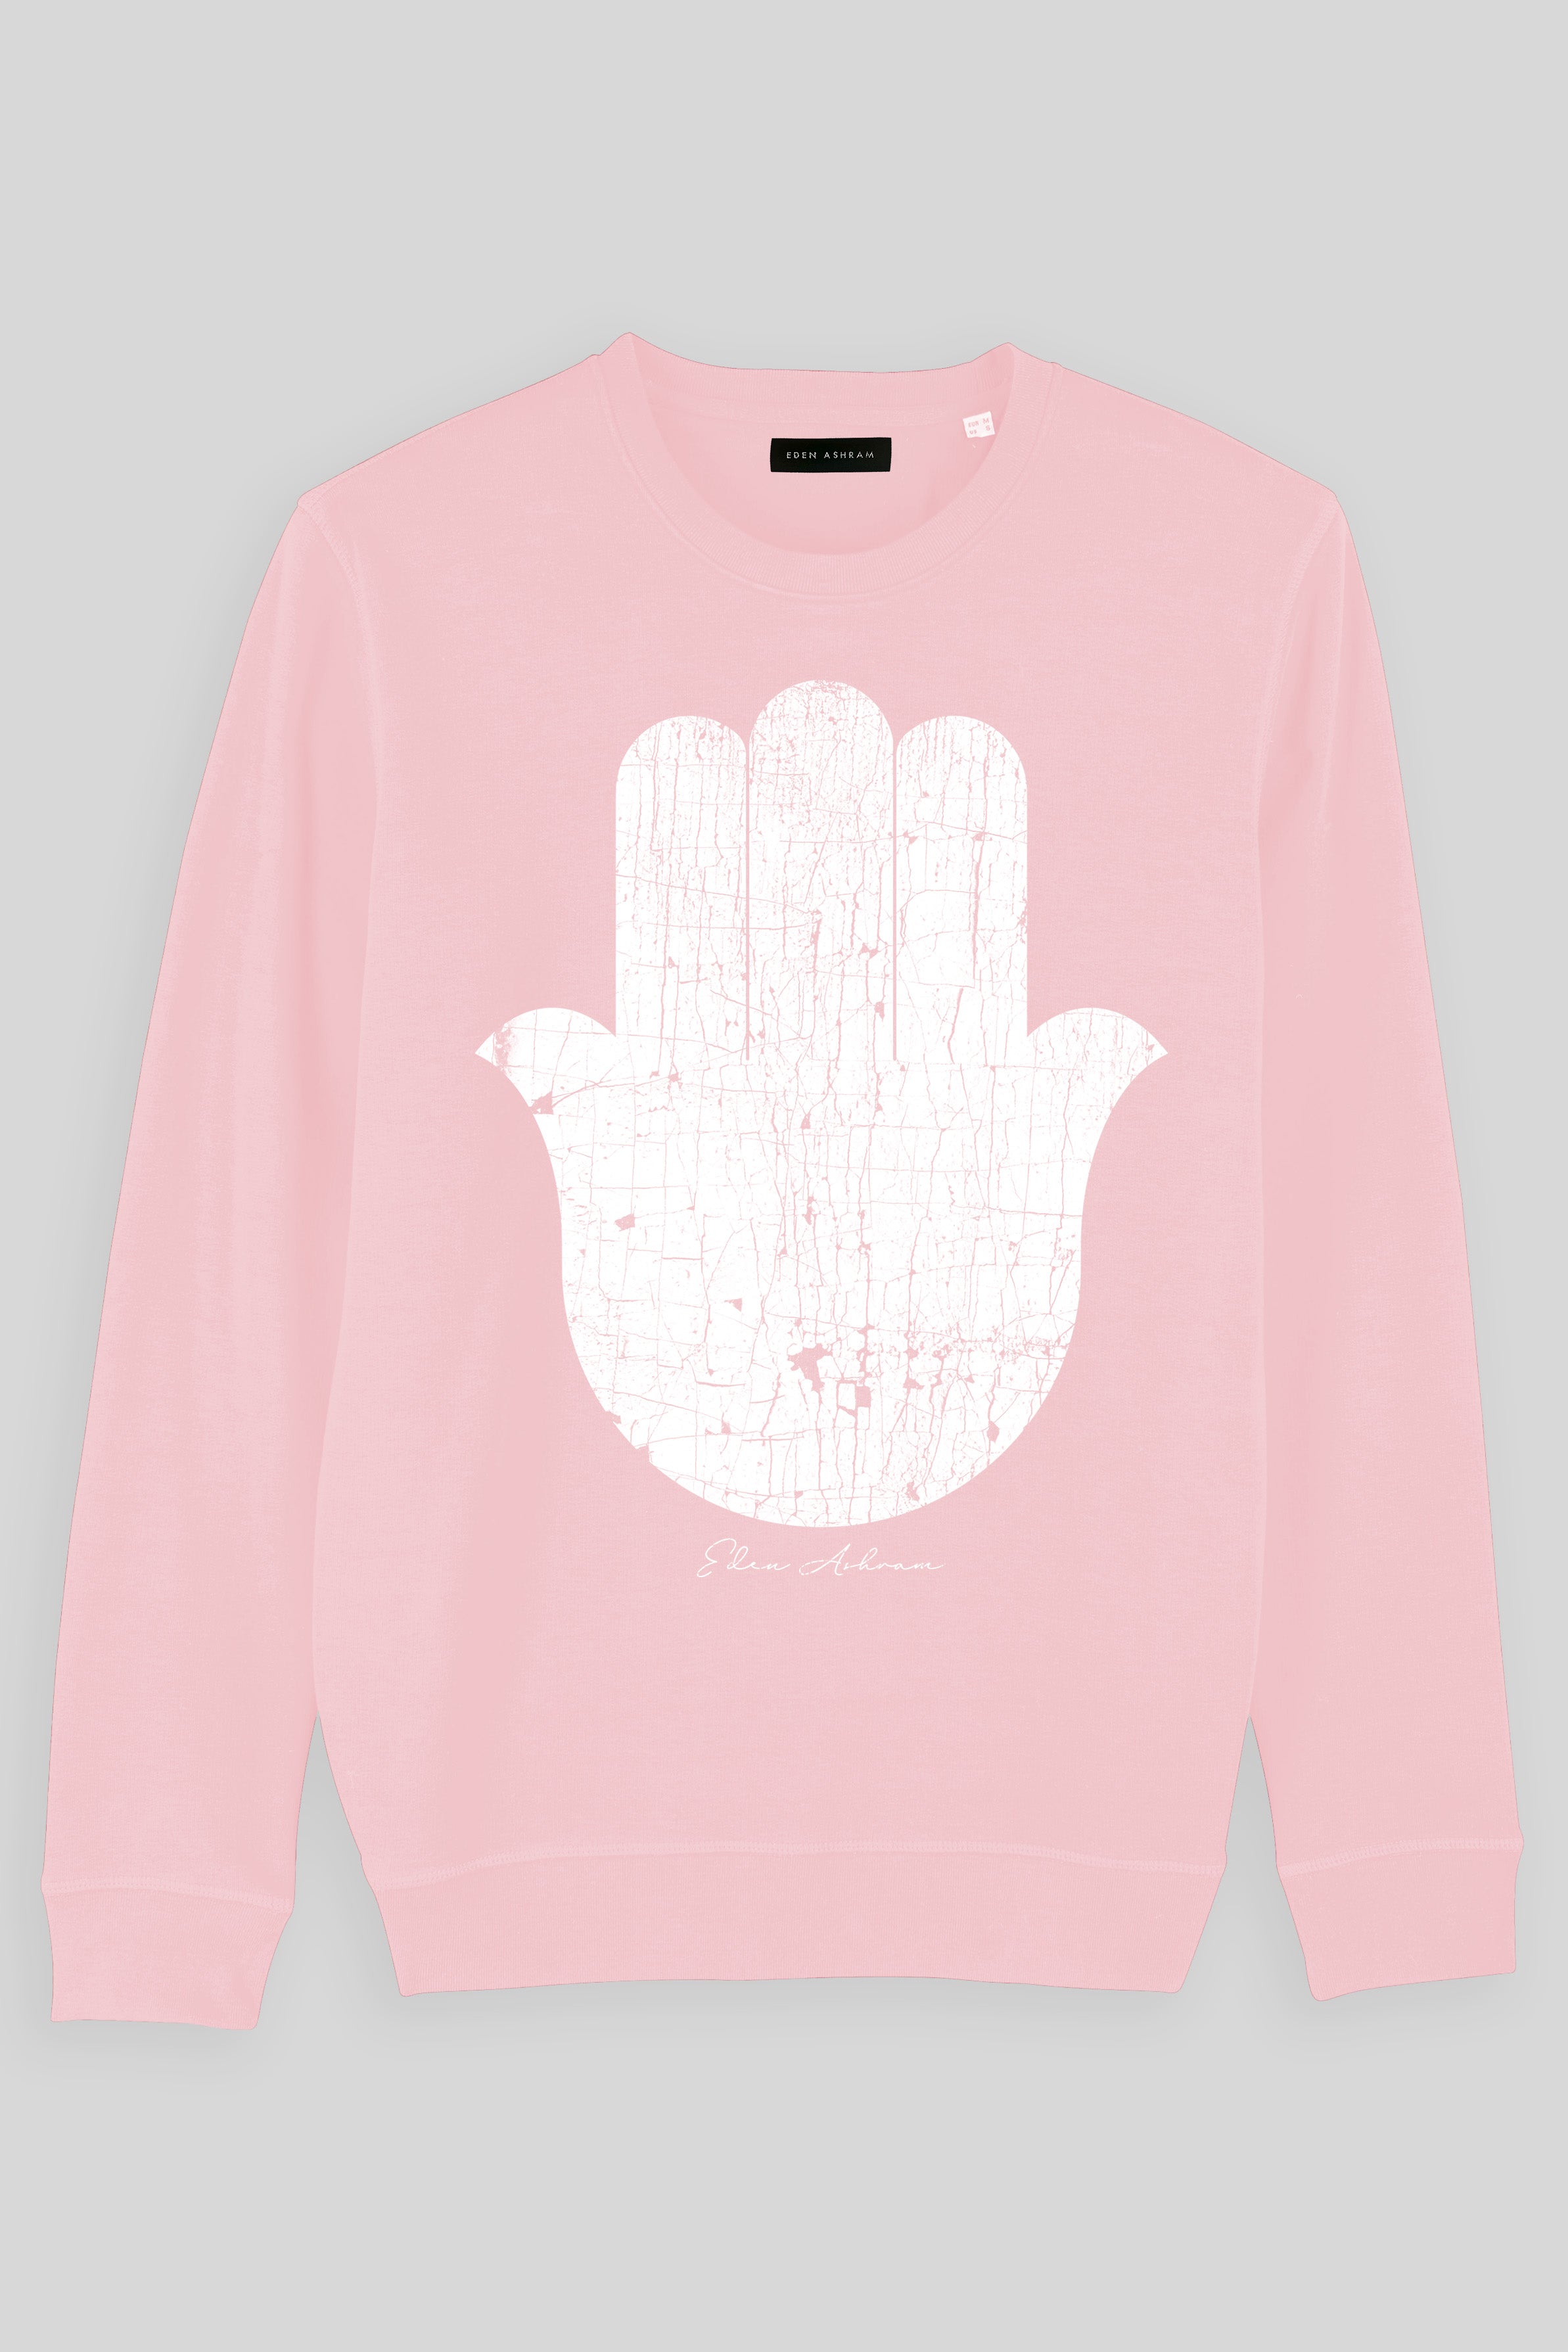 EDEN ASHRAM Cracked Hamsa Premium Crew New Neck Sweatshirt Cotton Pink